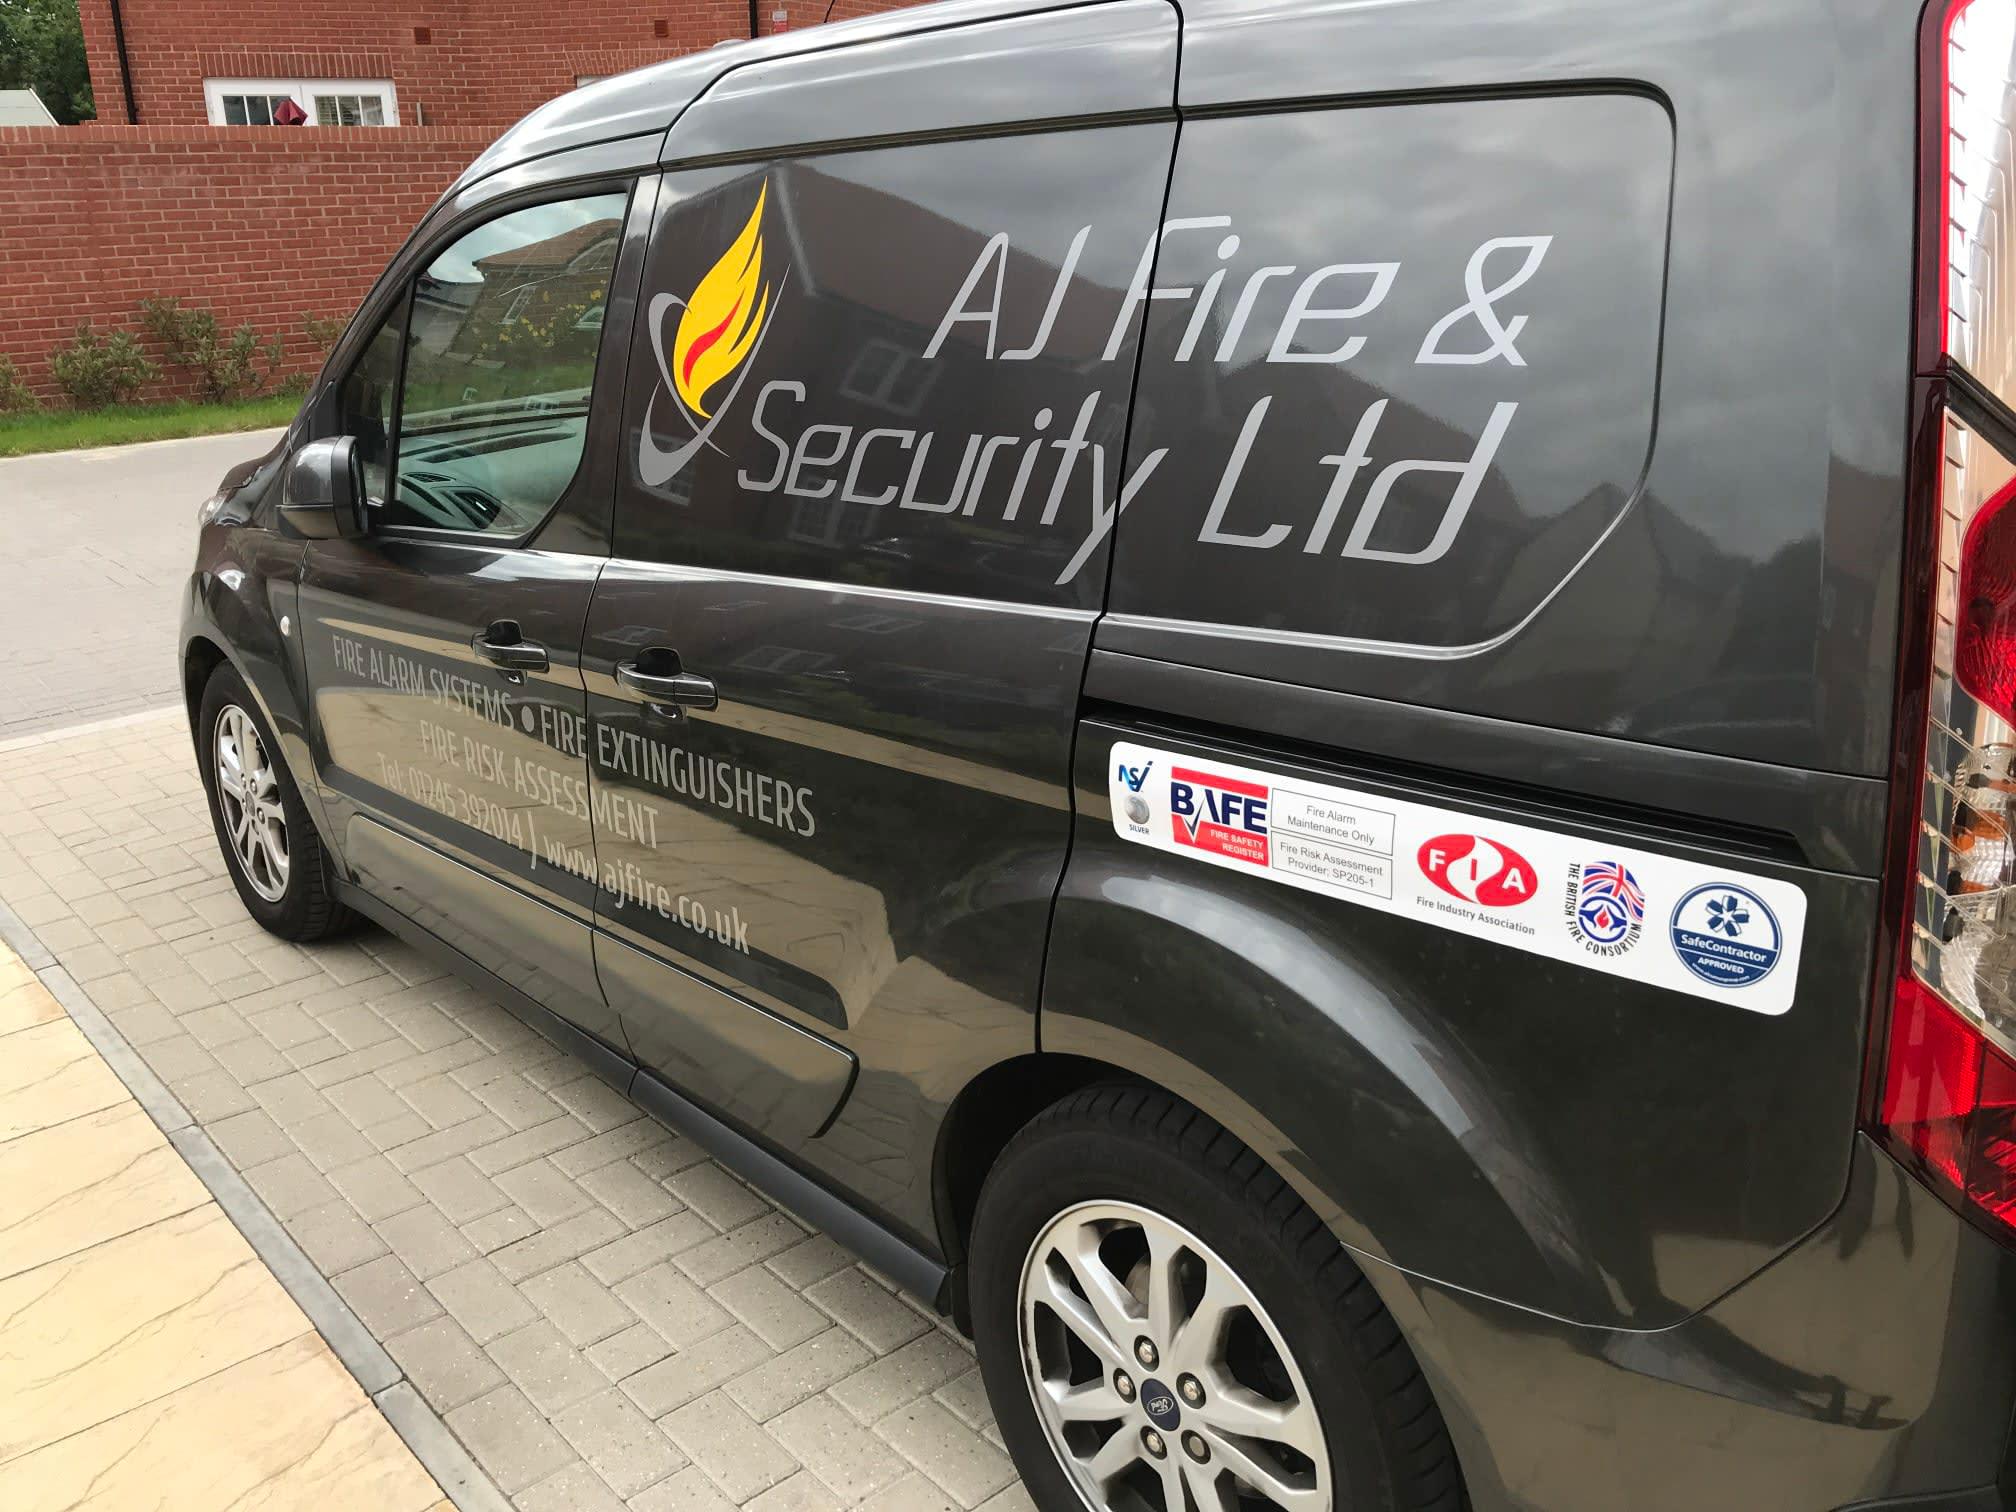 Images AJ Fire & Security Ltd